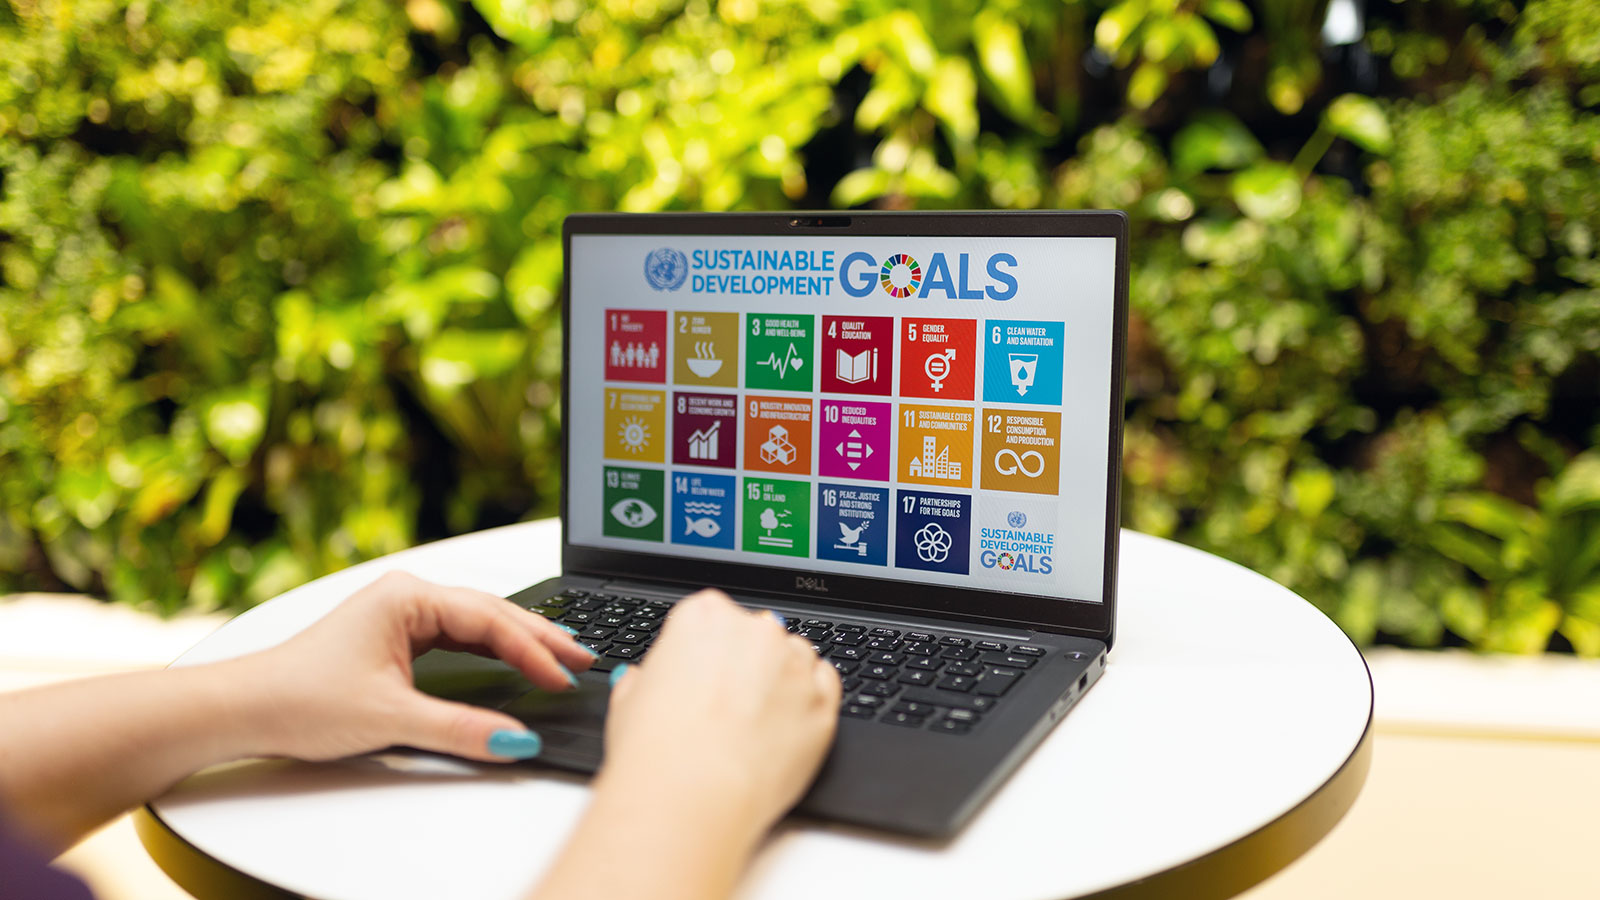 Henkilö käyttää tietokonetta, jonka ruudulla näkyy YK:n kestävän kehityksen tavoitteet.